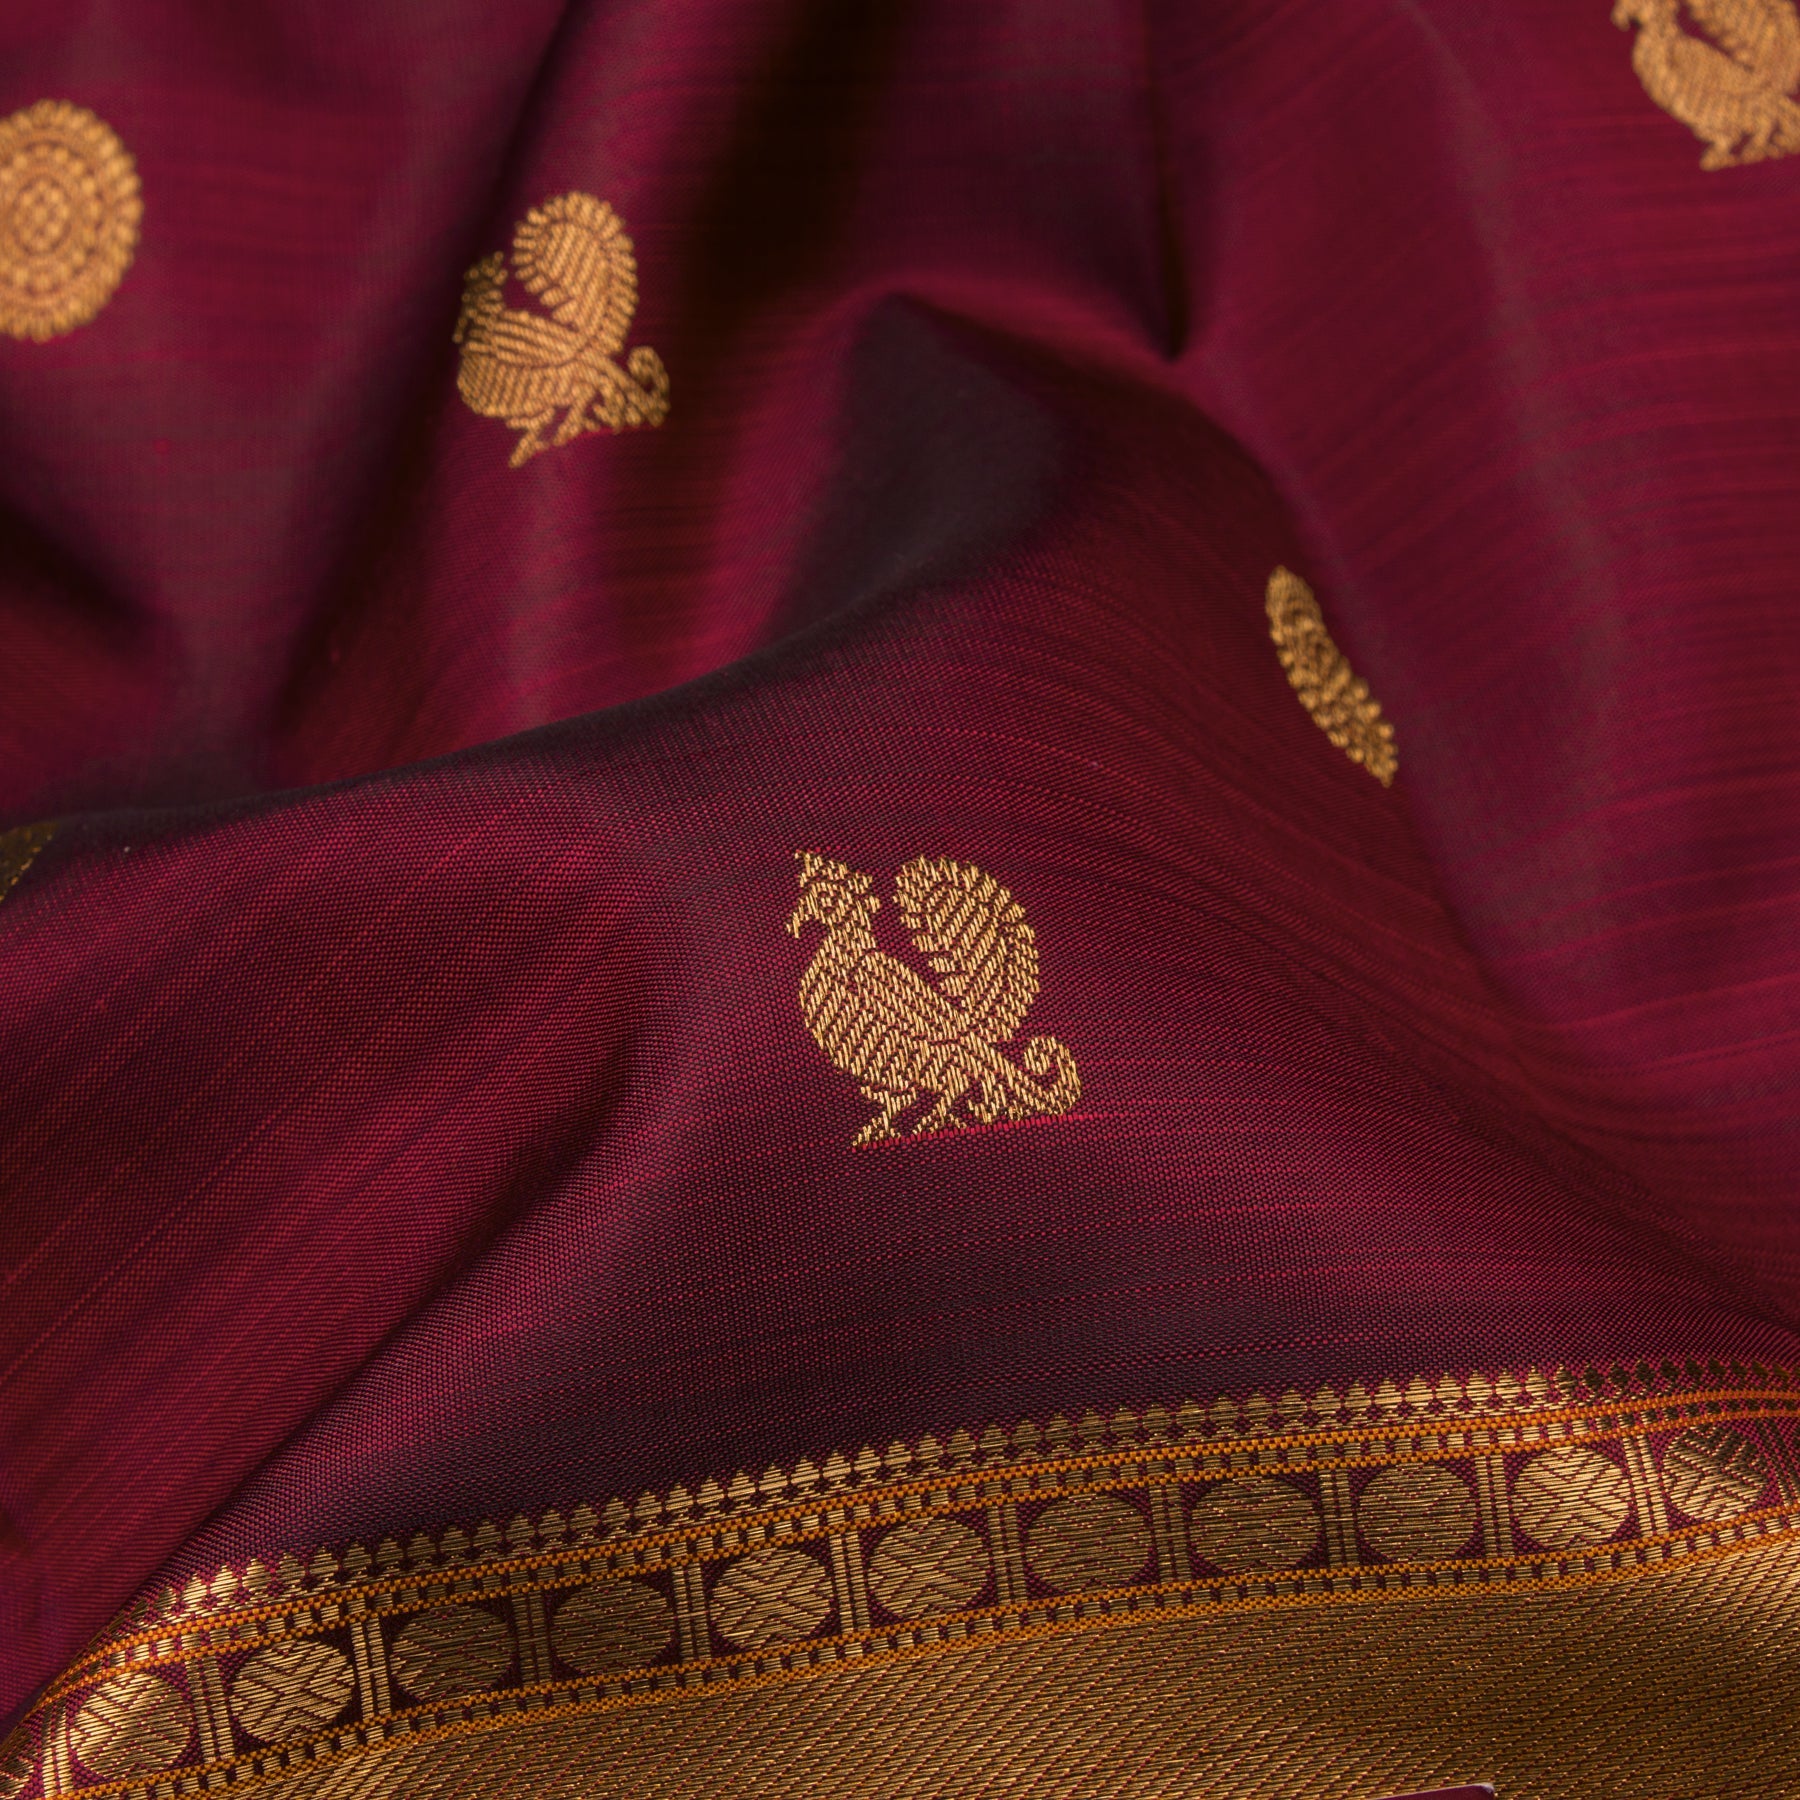 Kanakavalli Kanjivaram Silk Sari 22-110-HS001-07484 - Fabric View